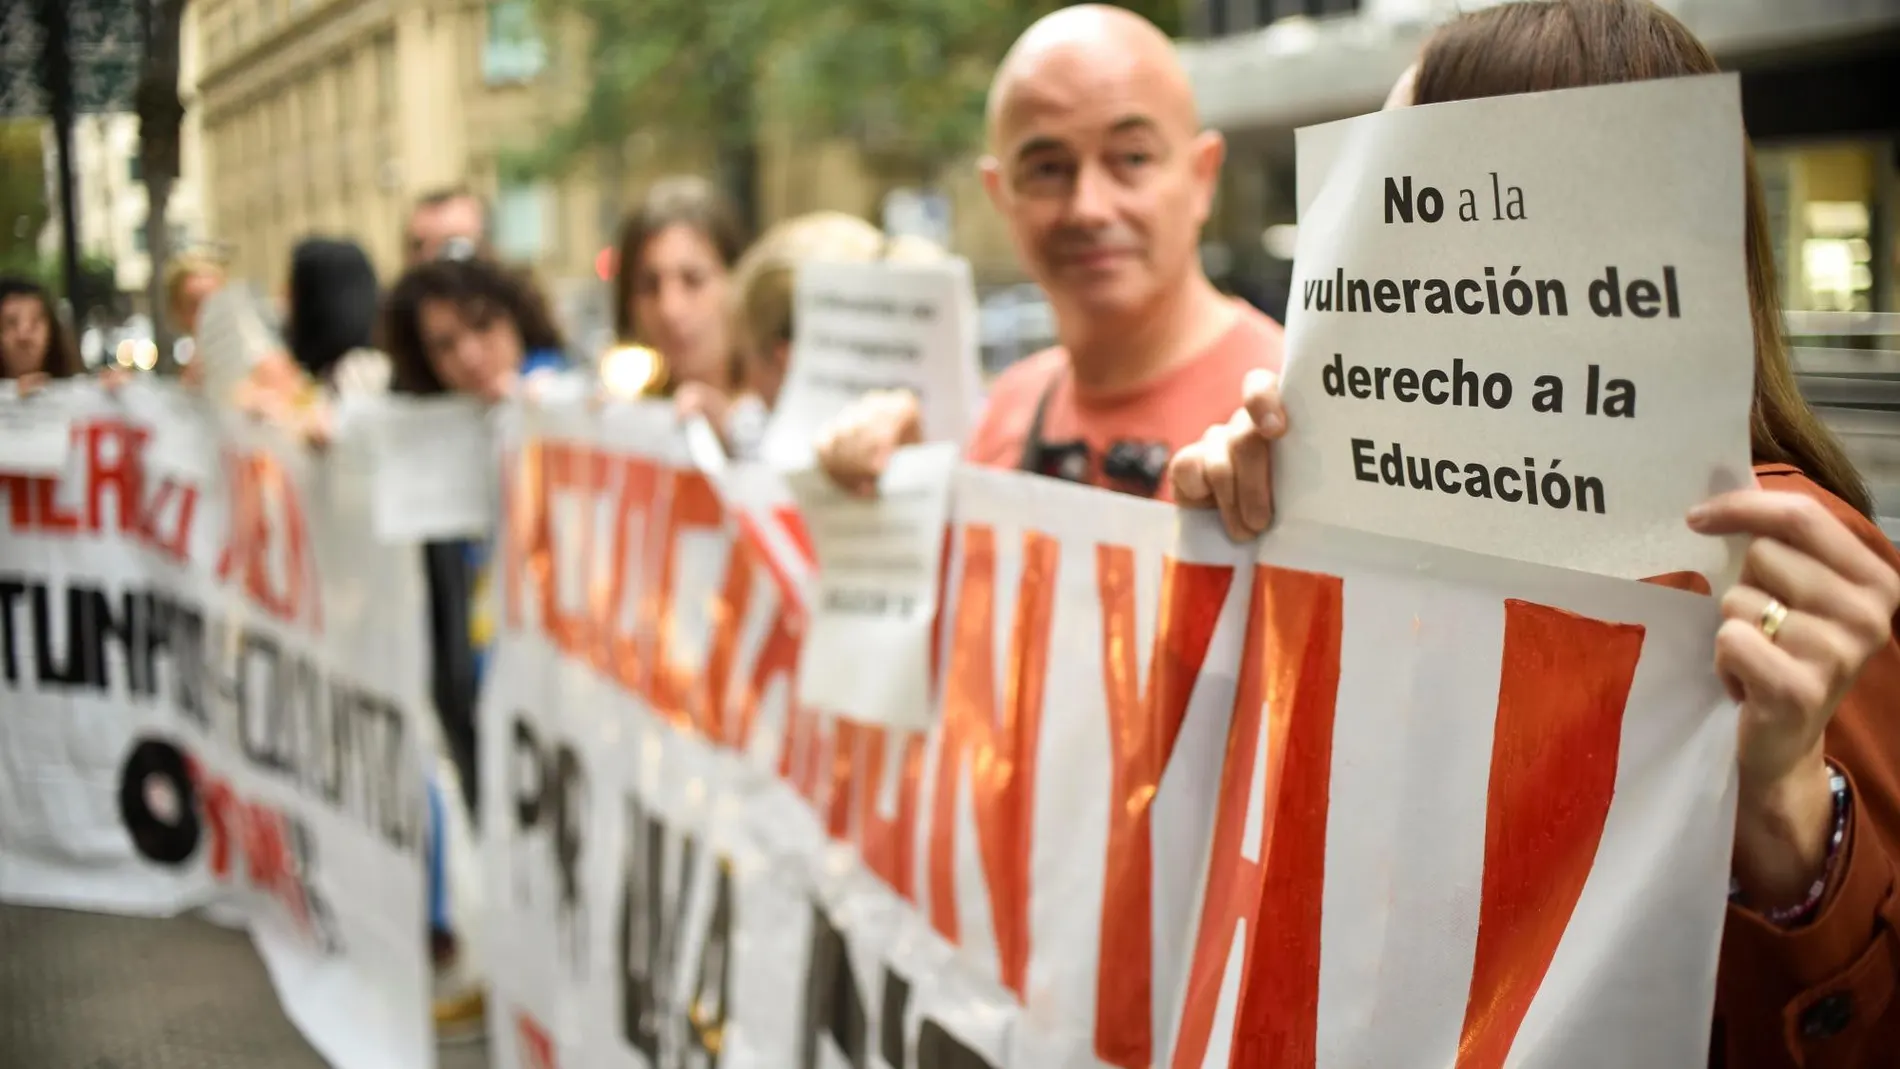 Protesta provocada por los representantes del sector educativo